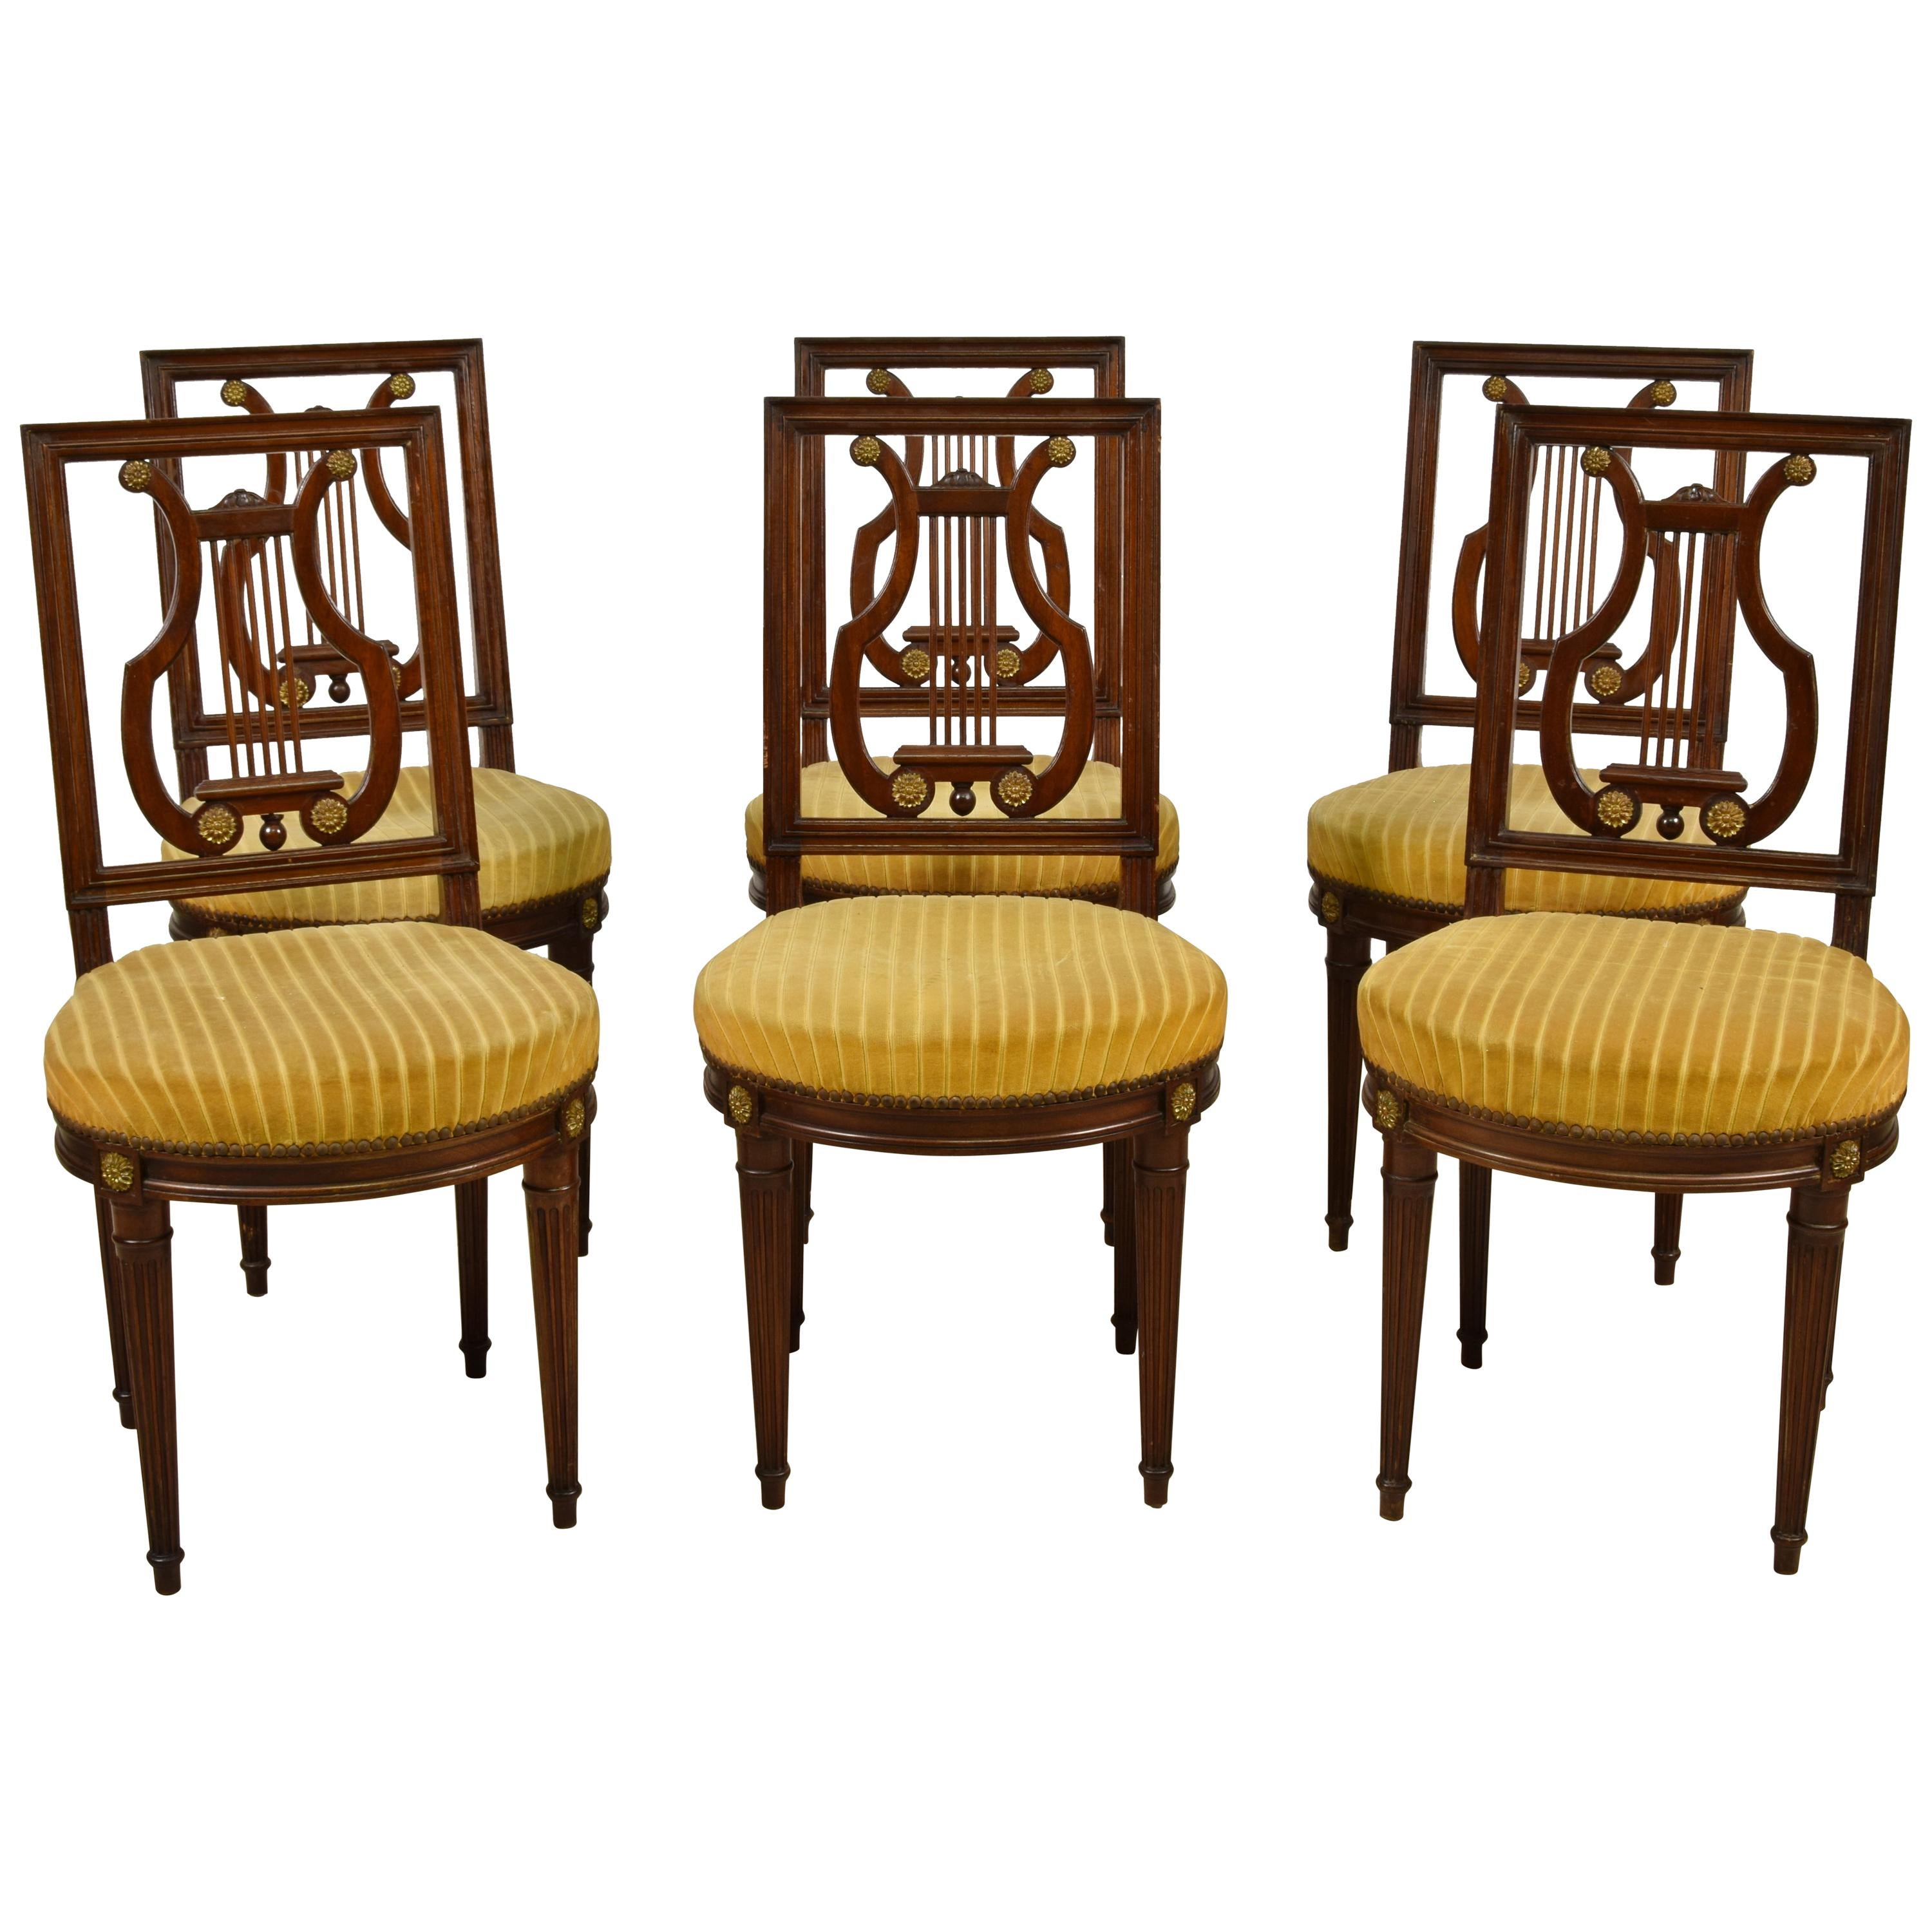 Sechs Holzstühle und zwei Holzsessel im französischen Louis-XVI-Stil des 19. Jahrhunderts